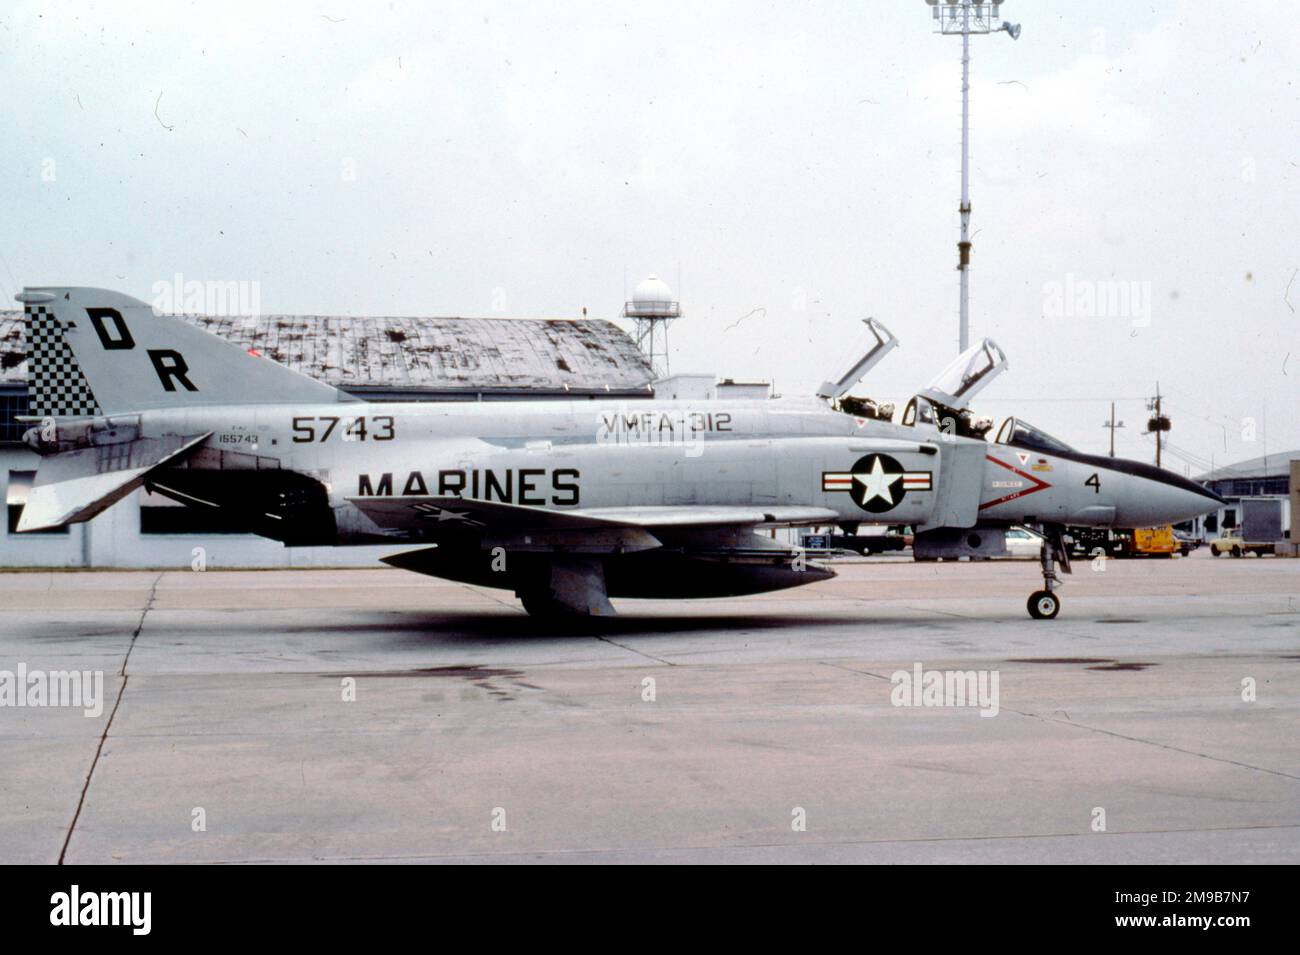 Cuerpo de Infantería de Marina de los Estados Unidos - McDonnell F-4J-34-MC Phantom 155743 (MSN 2929, código base 'DR', señal de llamada '4') de VMFA-312. Foto de stock